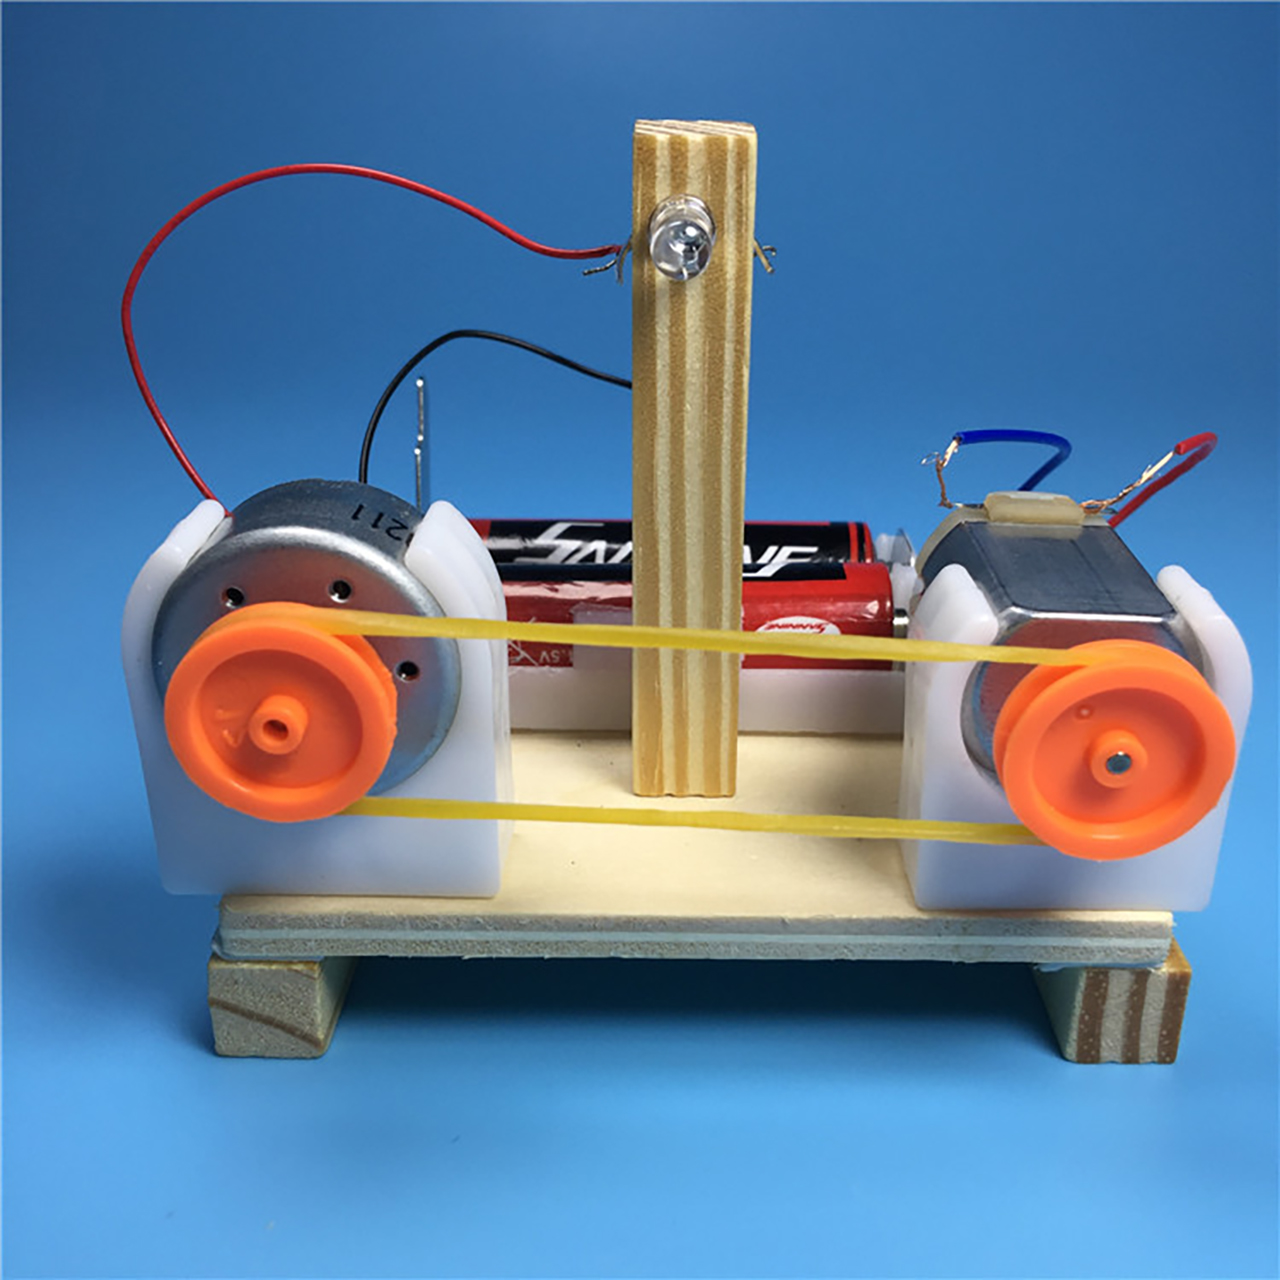 Đồ chơi trẻ em S06 thông minh sáng tạo STEM (STEAM) mô hình lắp ráp máy chuyển đổi năng lượng bằng gỗ